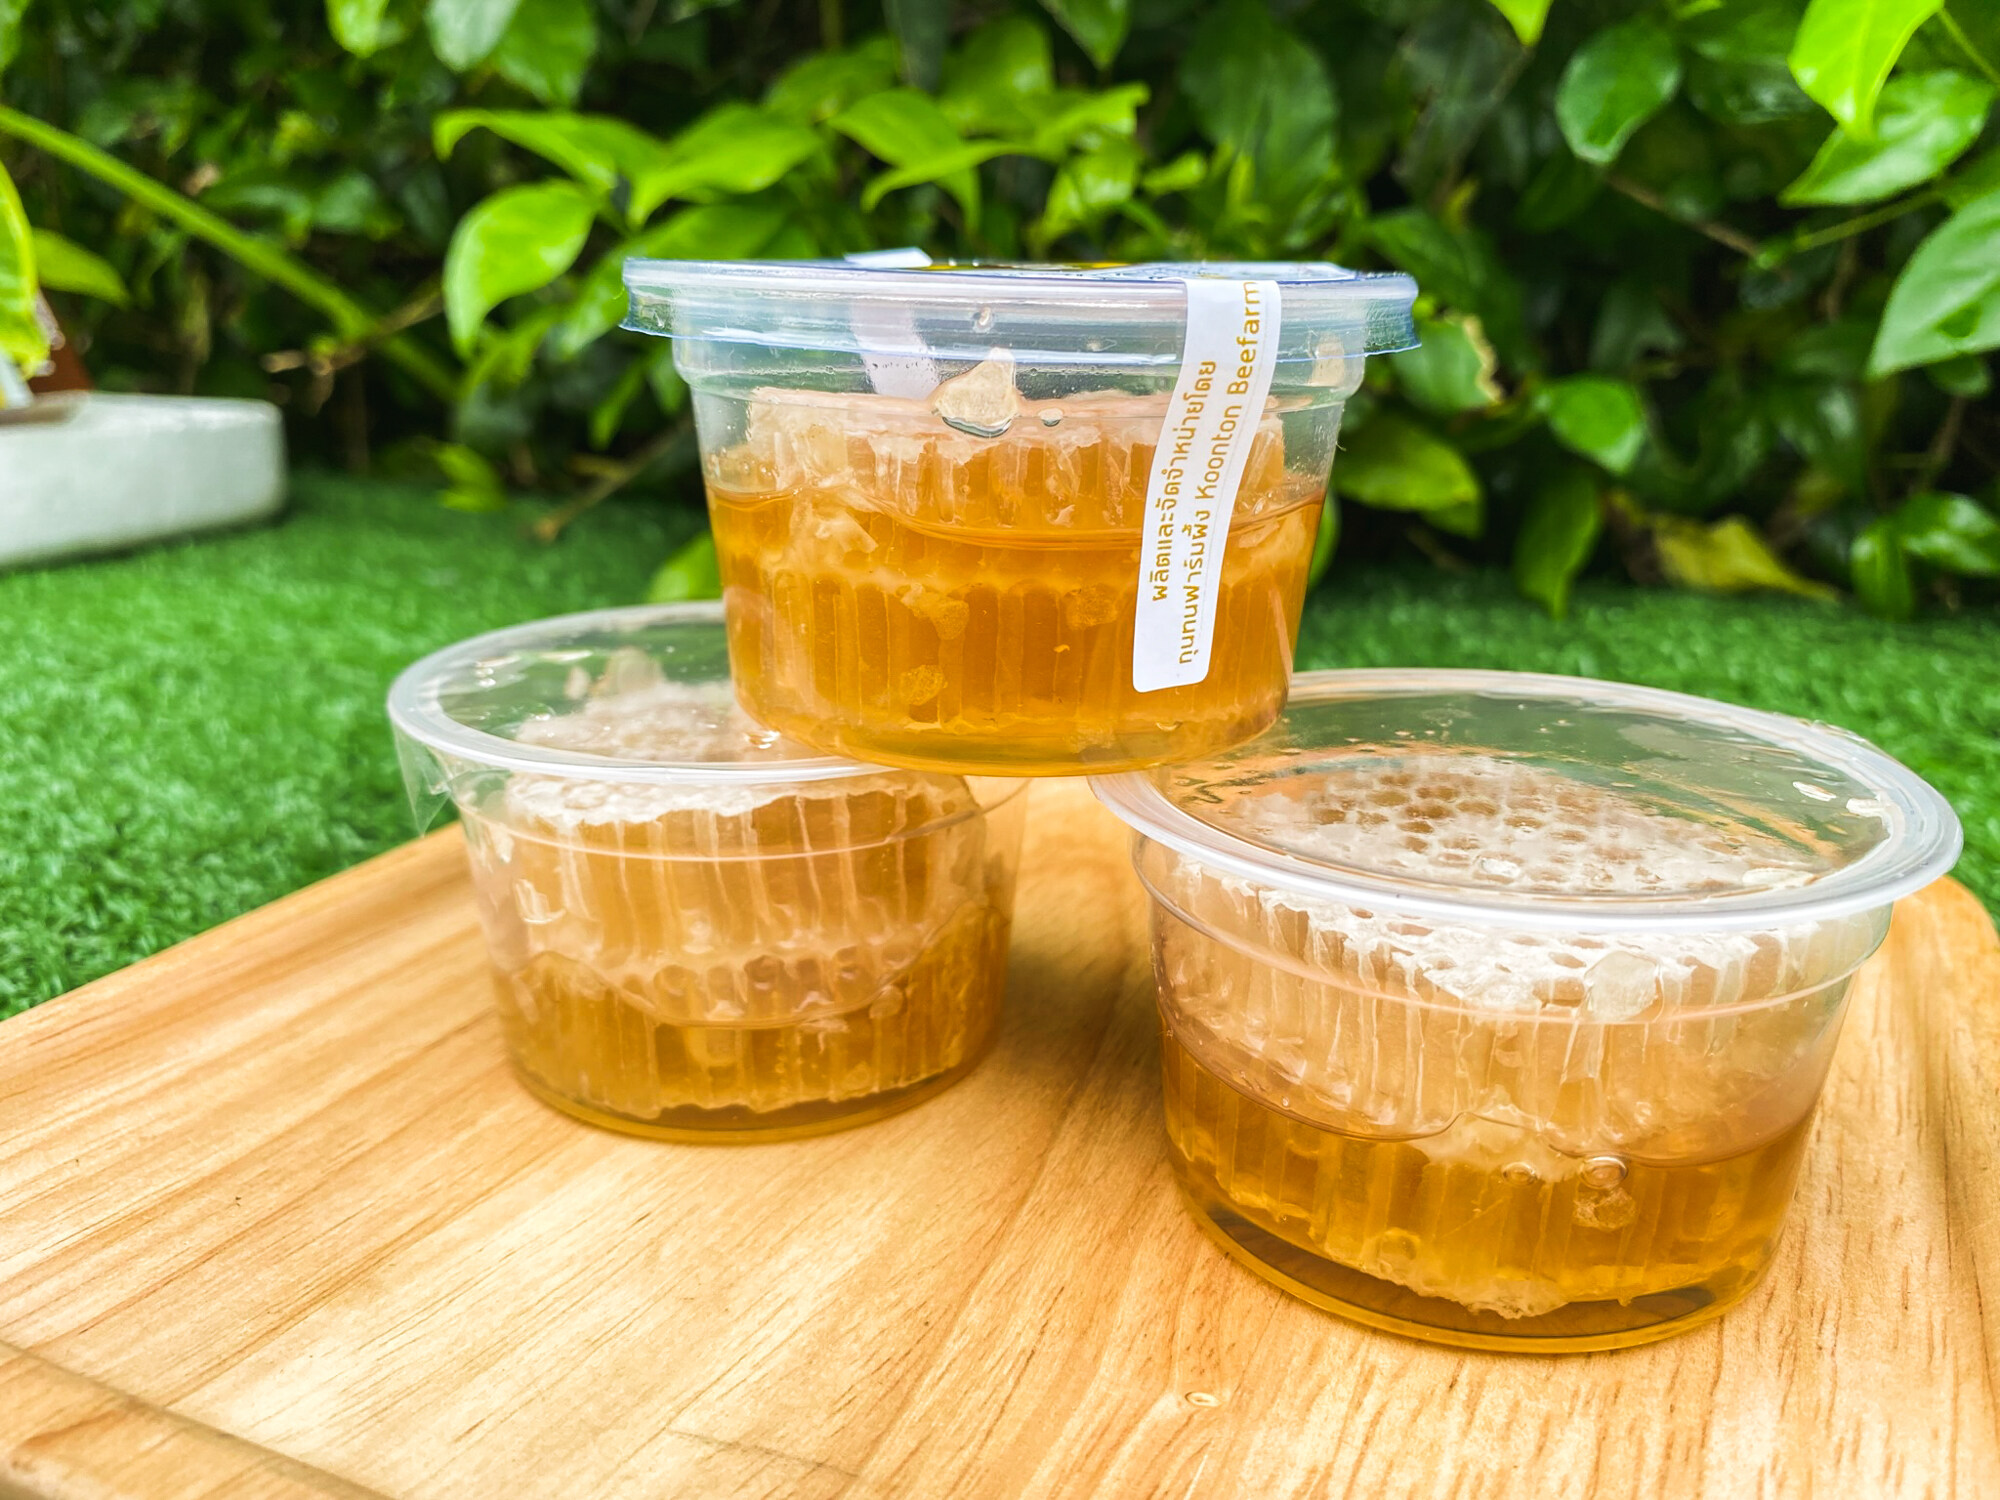 มุมมองเพิ่มเติมของสินค้า รวงผึ้งขนาด 90 กรัม มี [อย.] และ [GAP] รวงน้ำผึ้งสดธรรมชาติ 100% (HoneyComb)  กุนทนฟาร์ม